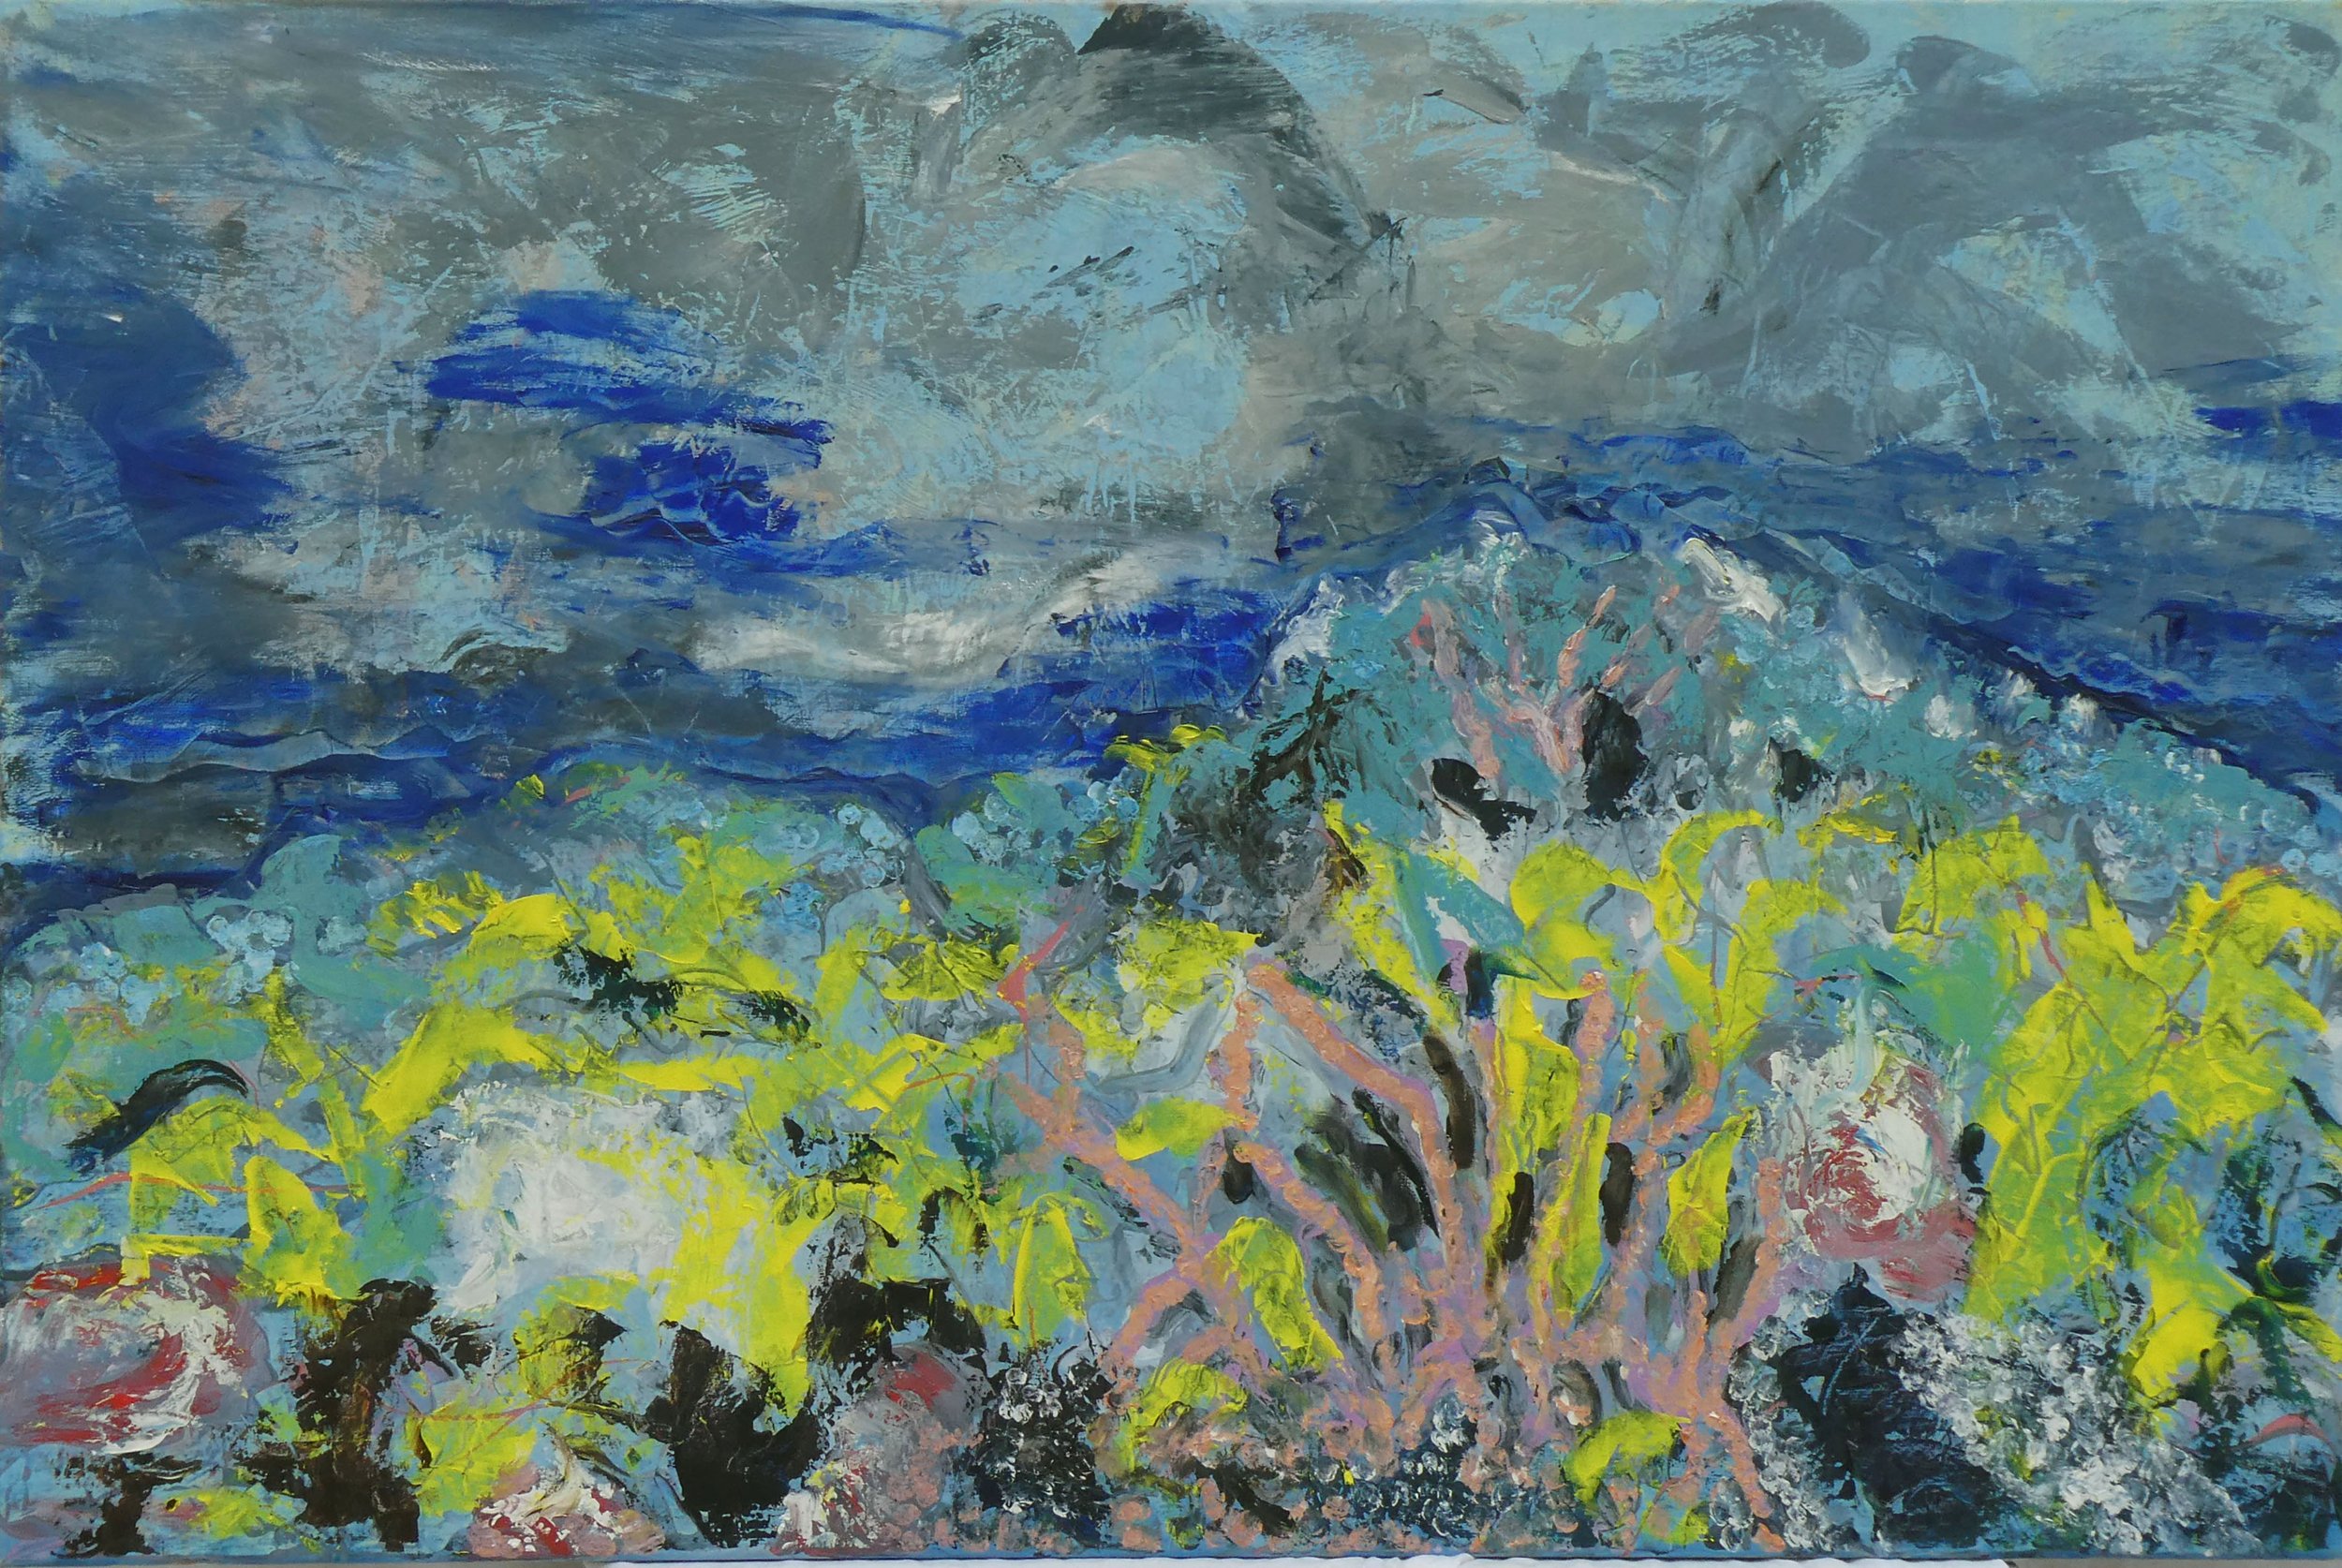 Korallenlandschaft, 2022, oil on canvas, 80 x 100 cm